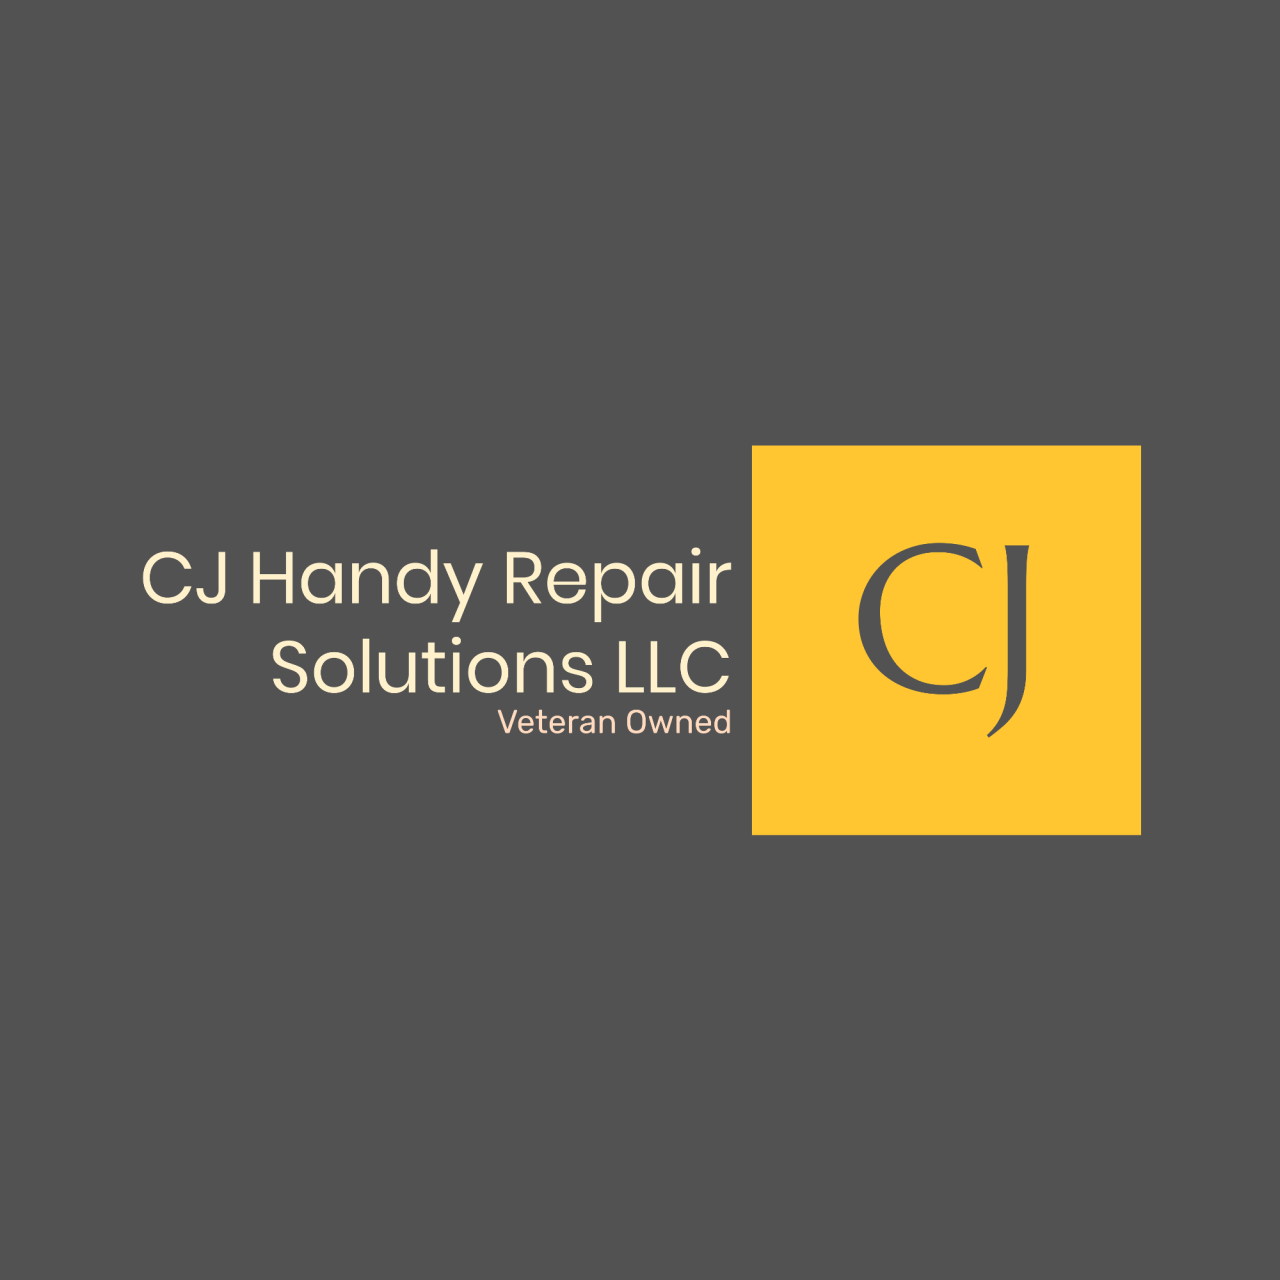 CJ Handy Repair Solutions's logo